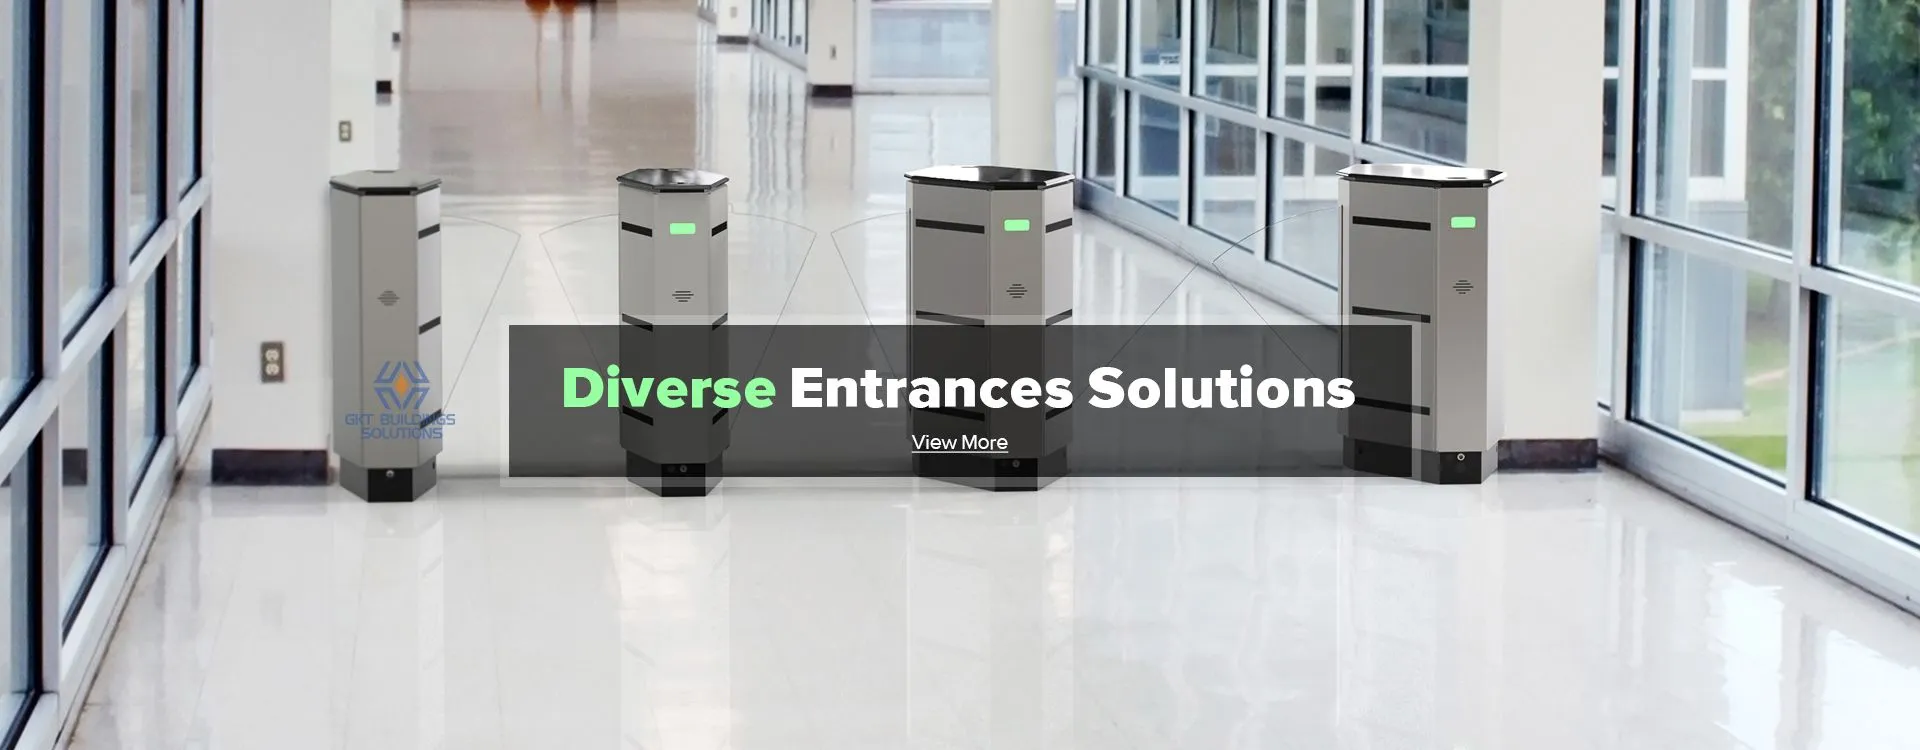 Diverse Entrance Solutions Hospital/Turnstile/Speed Gate